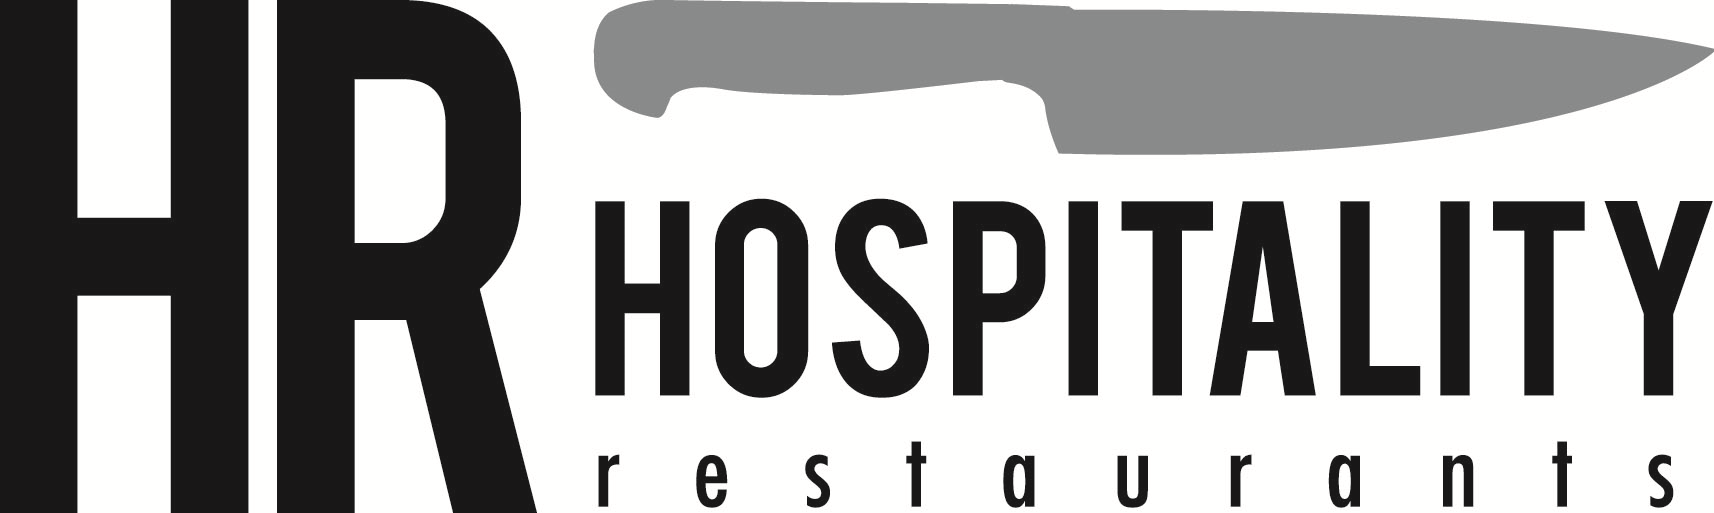 Hospitality Restaurants logo